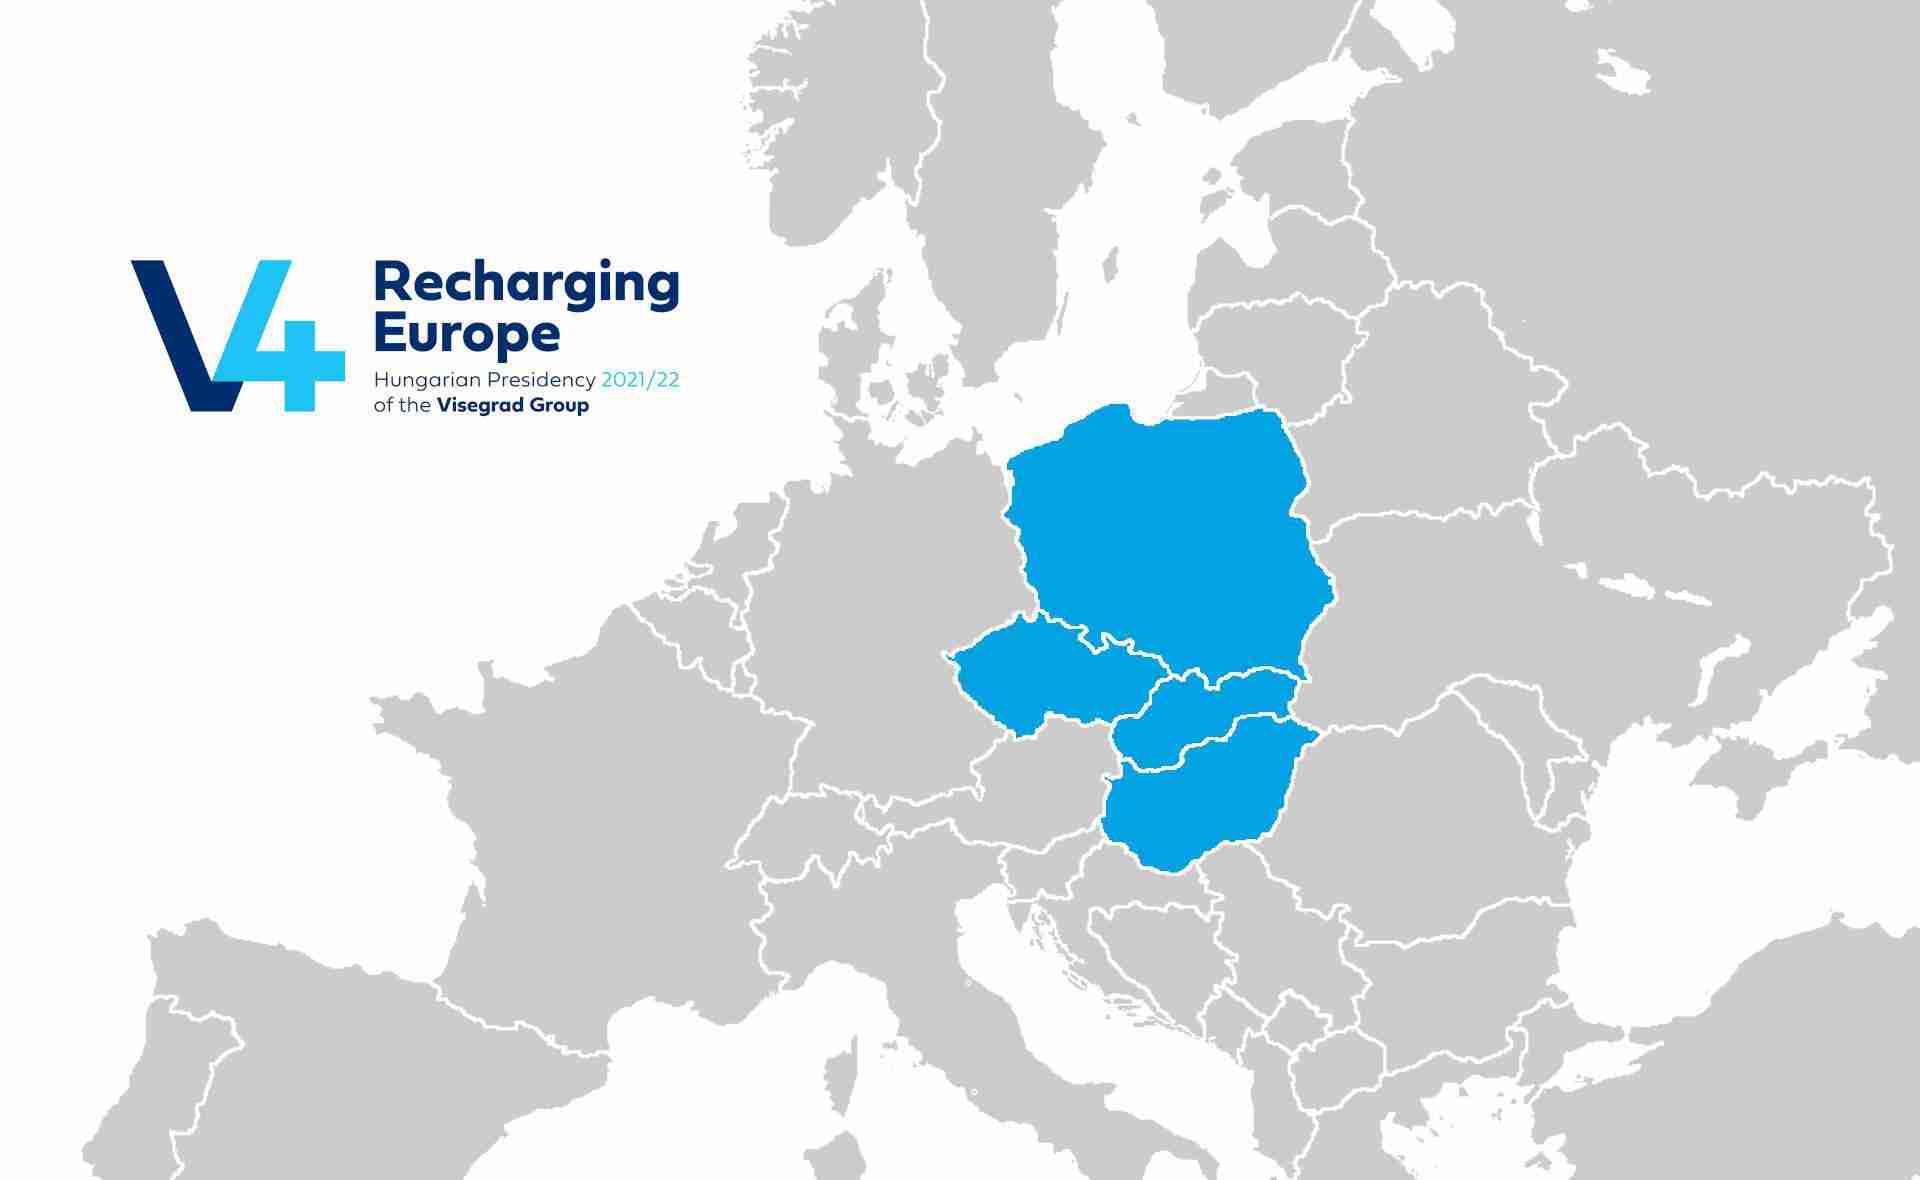 Recharging Europe